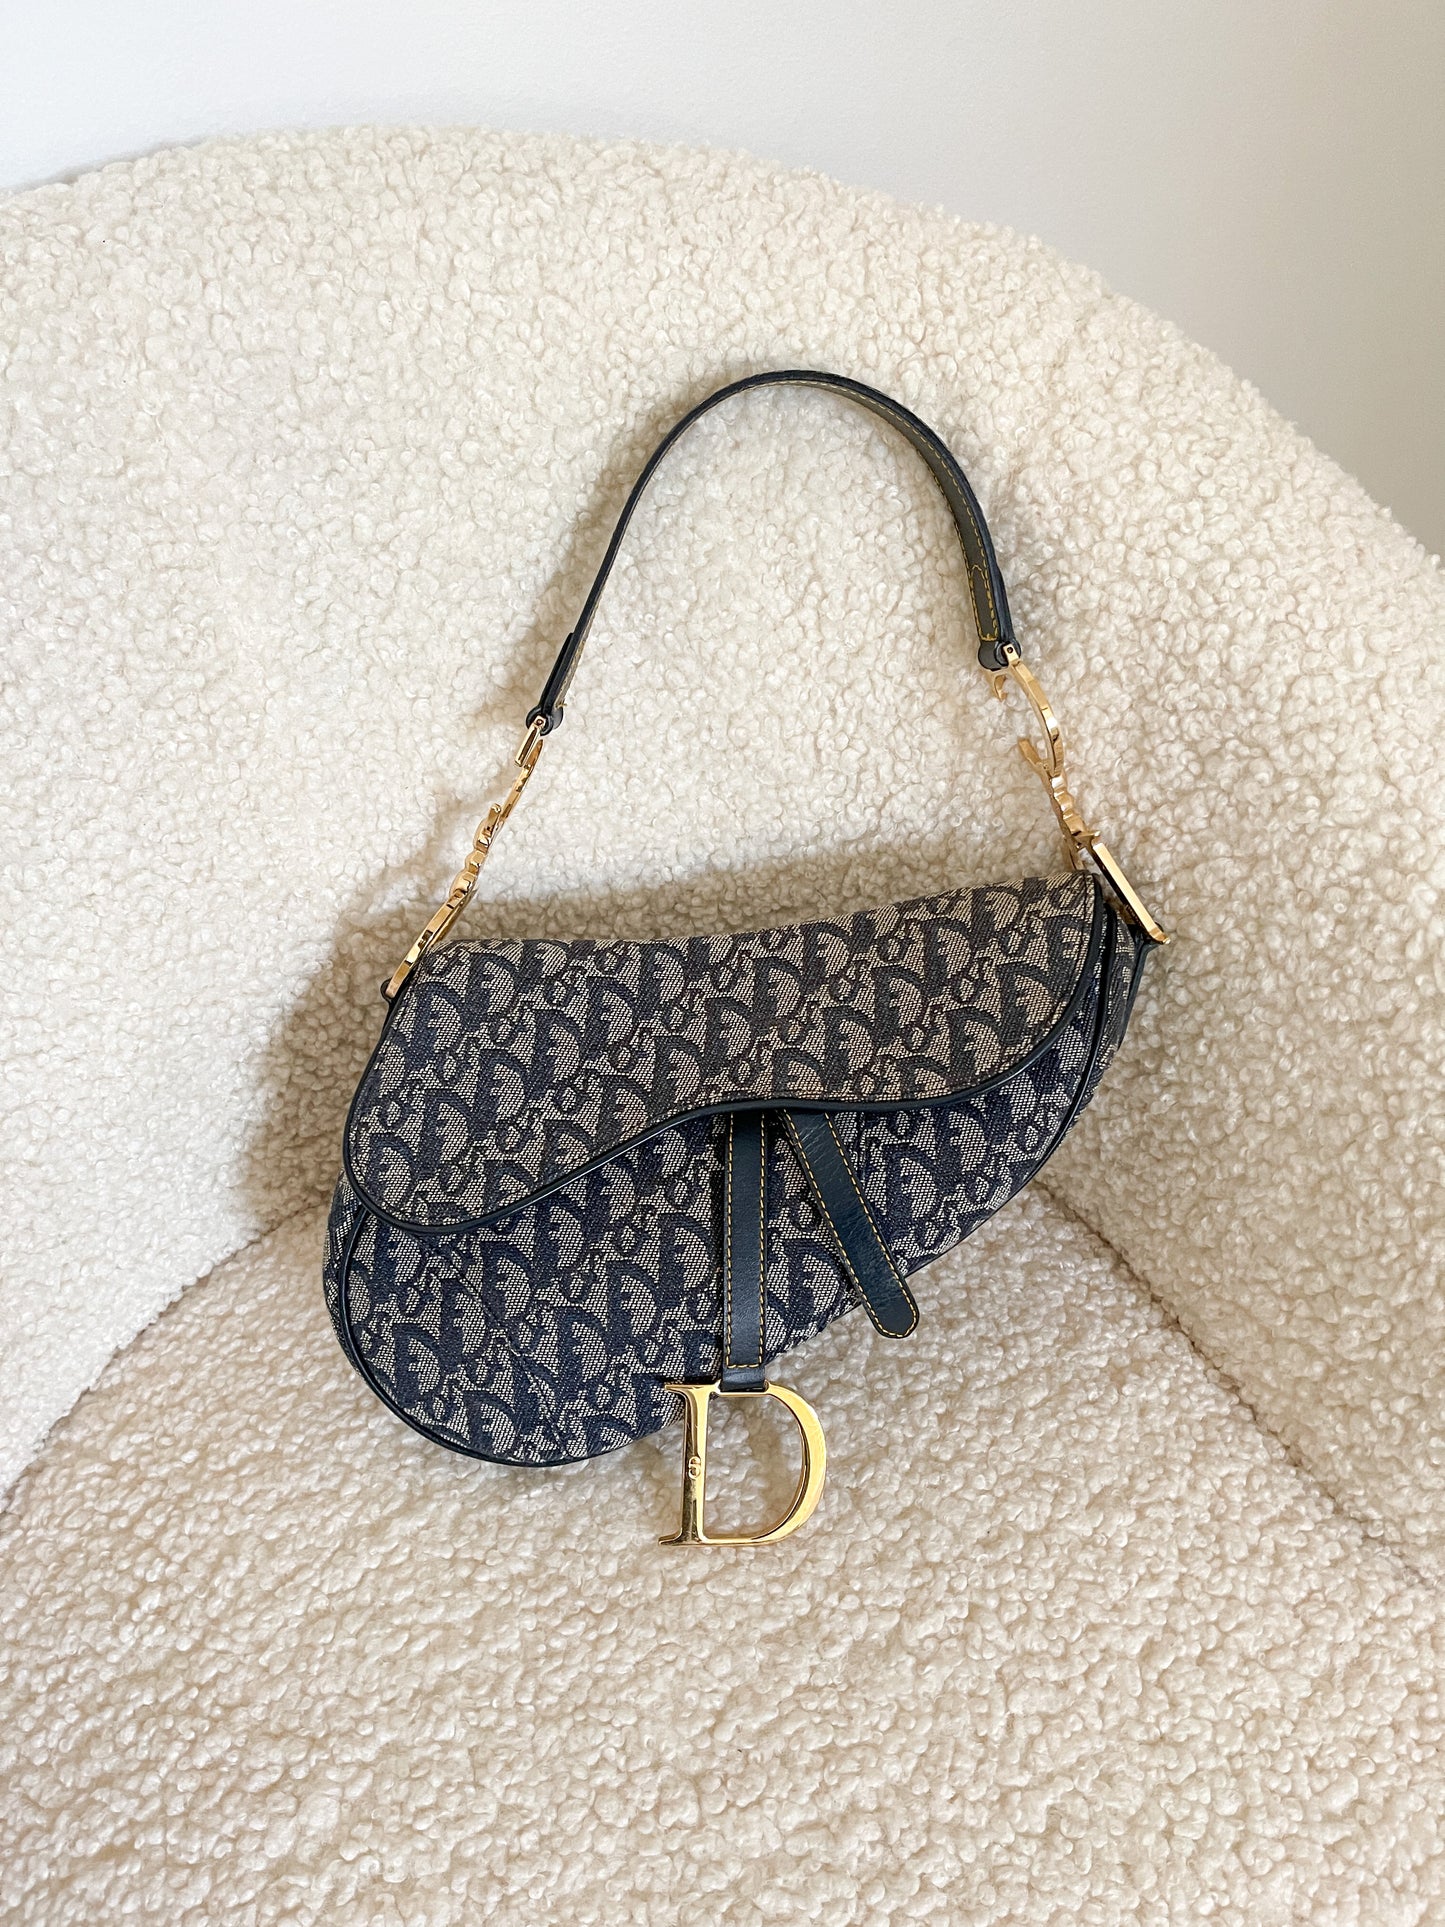 Pick your fave: Dior Pochette or Dior Saddle bag? 👀 #vintagedior  #preloveddior #dioroblique #diorpochette #etoileluxuryvintage⠀